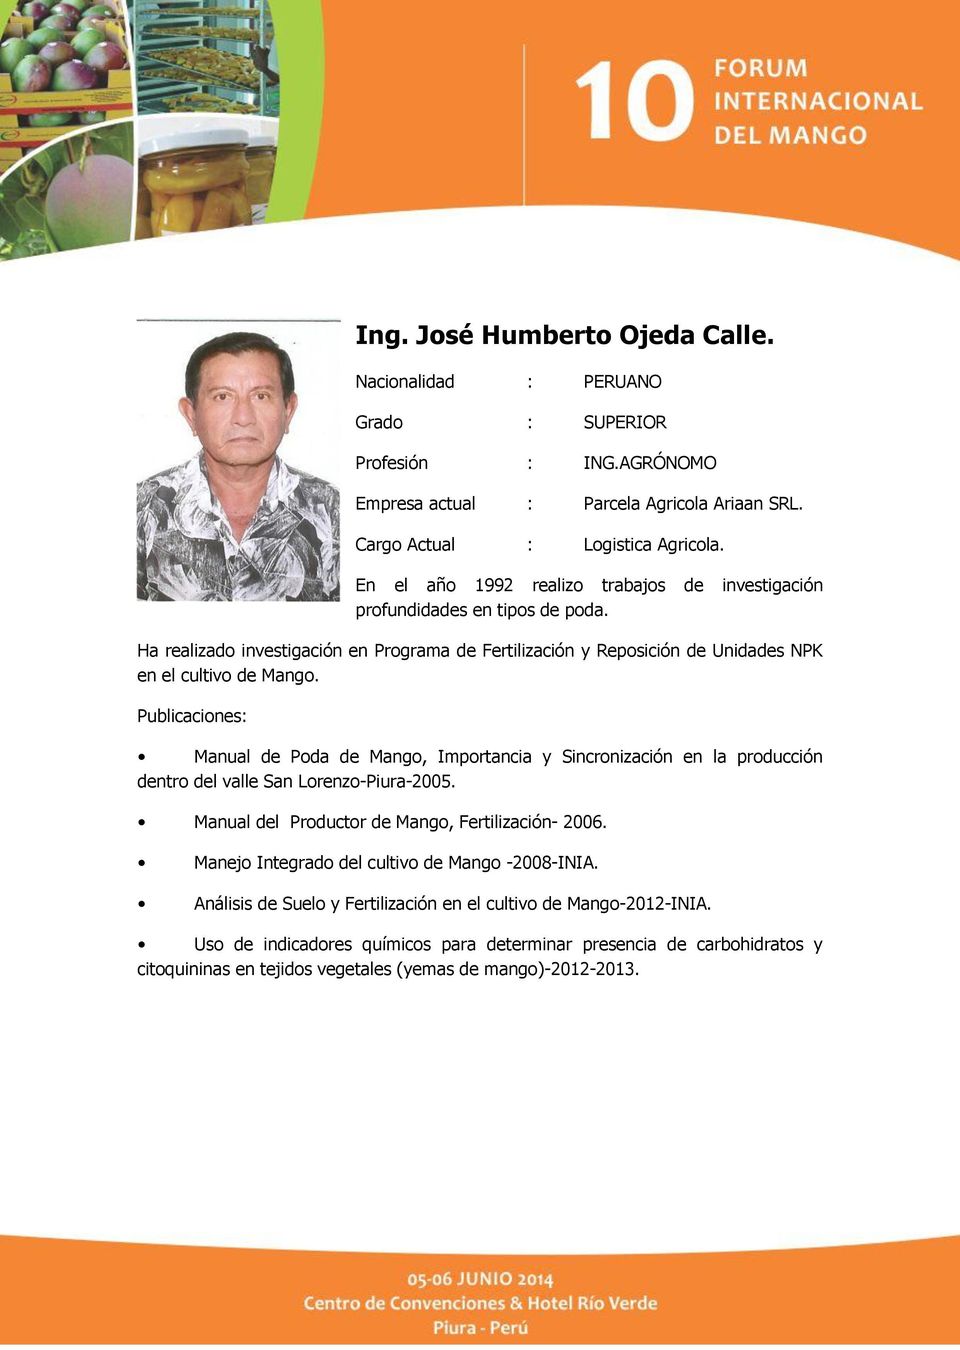 Publicaciones: Manual de Poda de Mango, Importancia y Sincronización en la producción dentro del valle San Lorenzo-Piura-2005. Manual del Productor de Mango, Fertilización- 2006.